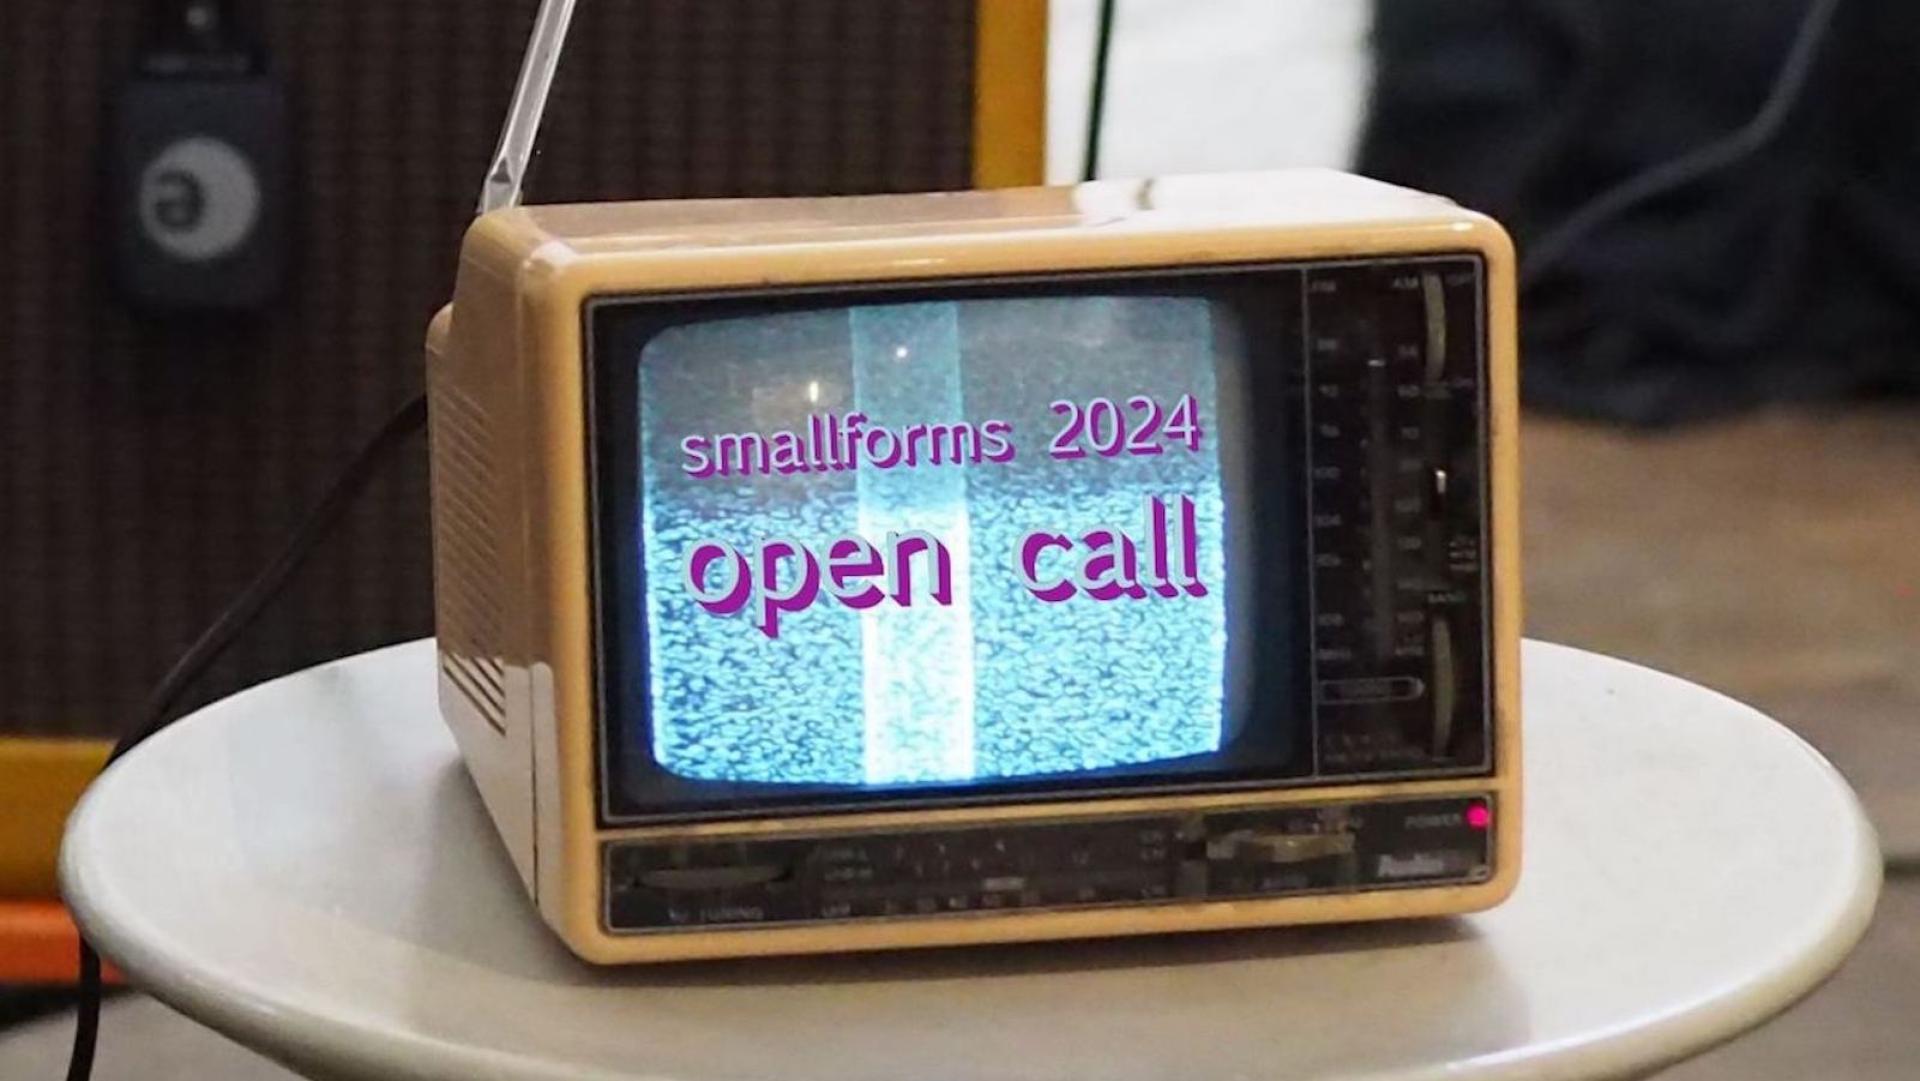 Open Call smallforms 2024